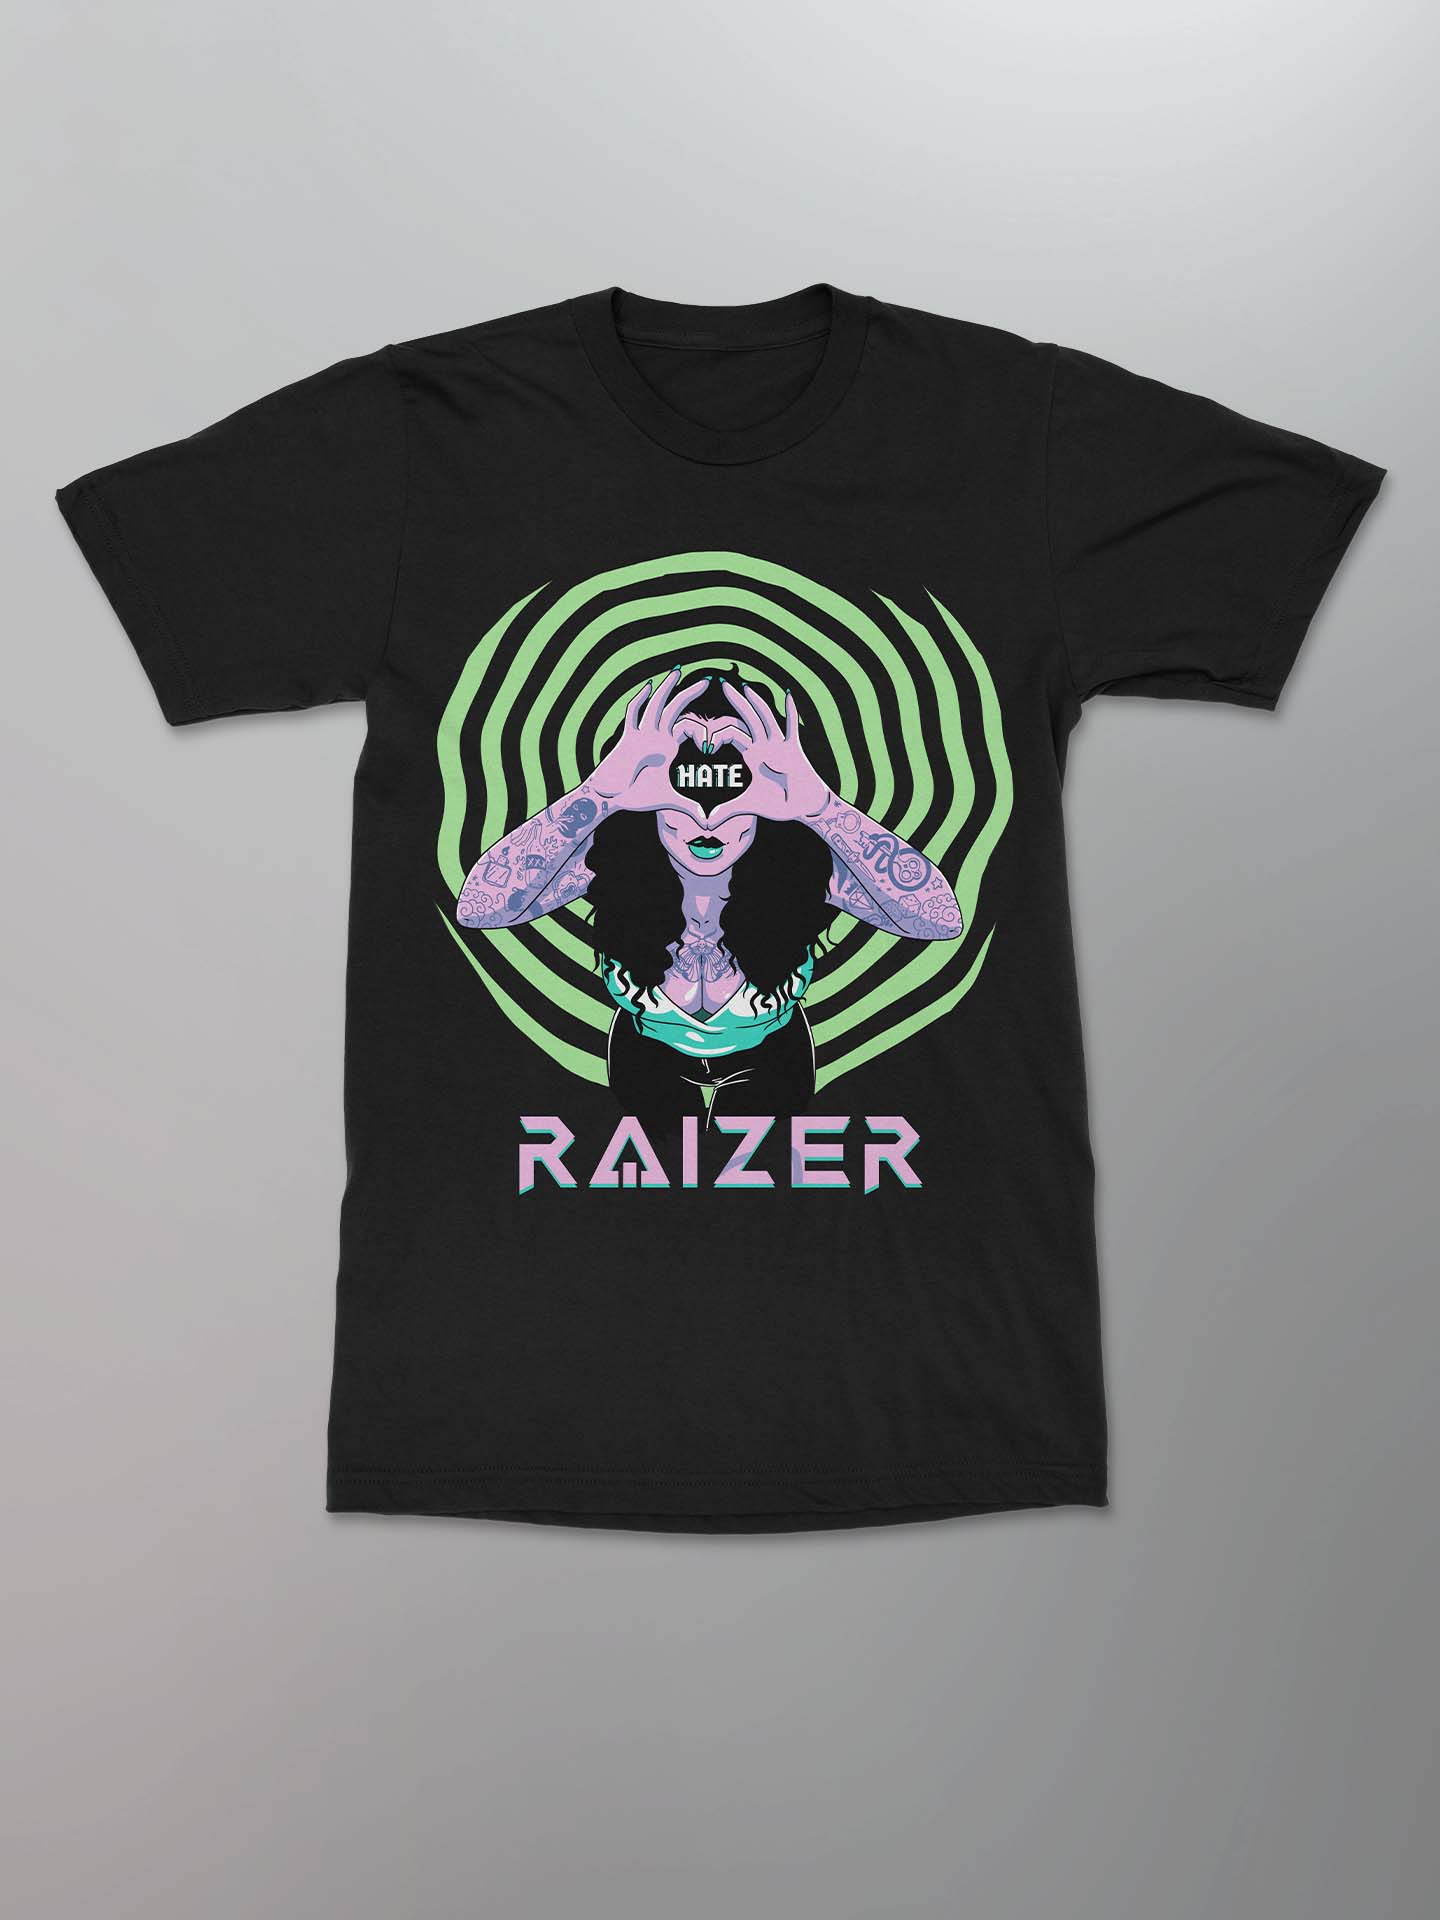 Raizer - Hate Shirt